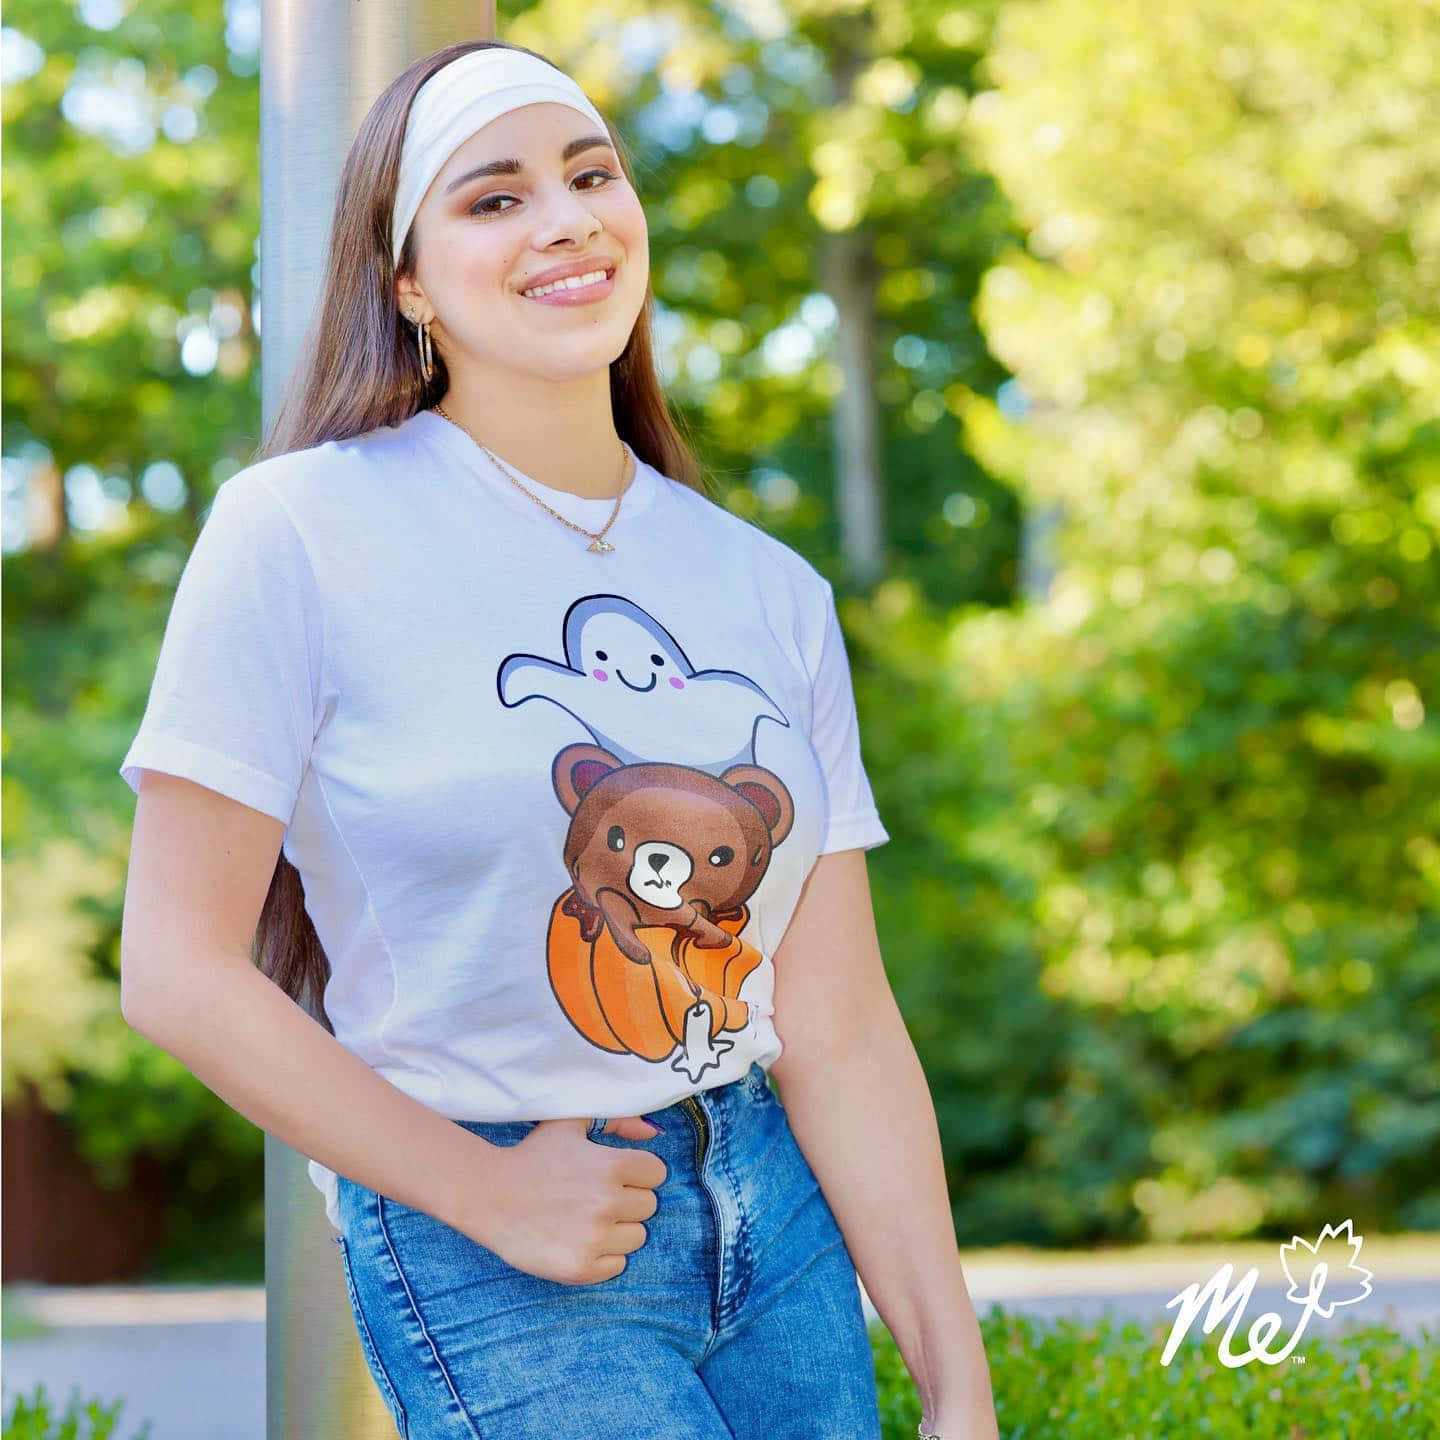 Einmädchen, Das Ein T-shirt Mit Einem Bären Darauf Trägt. Wallpaper